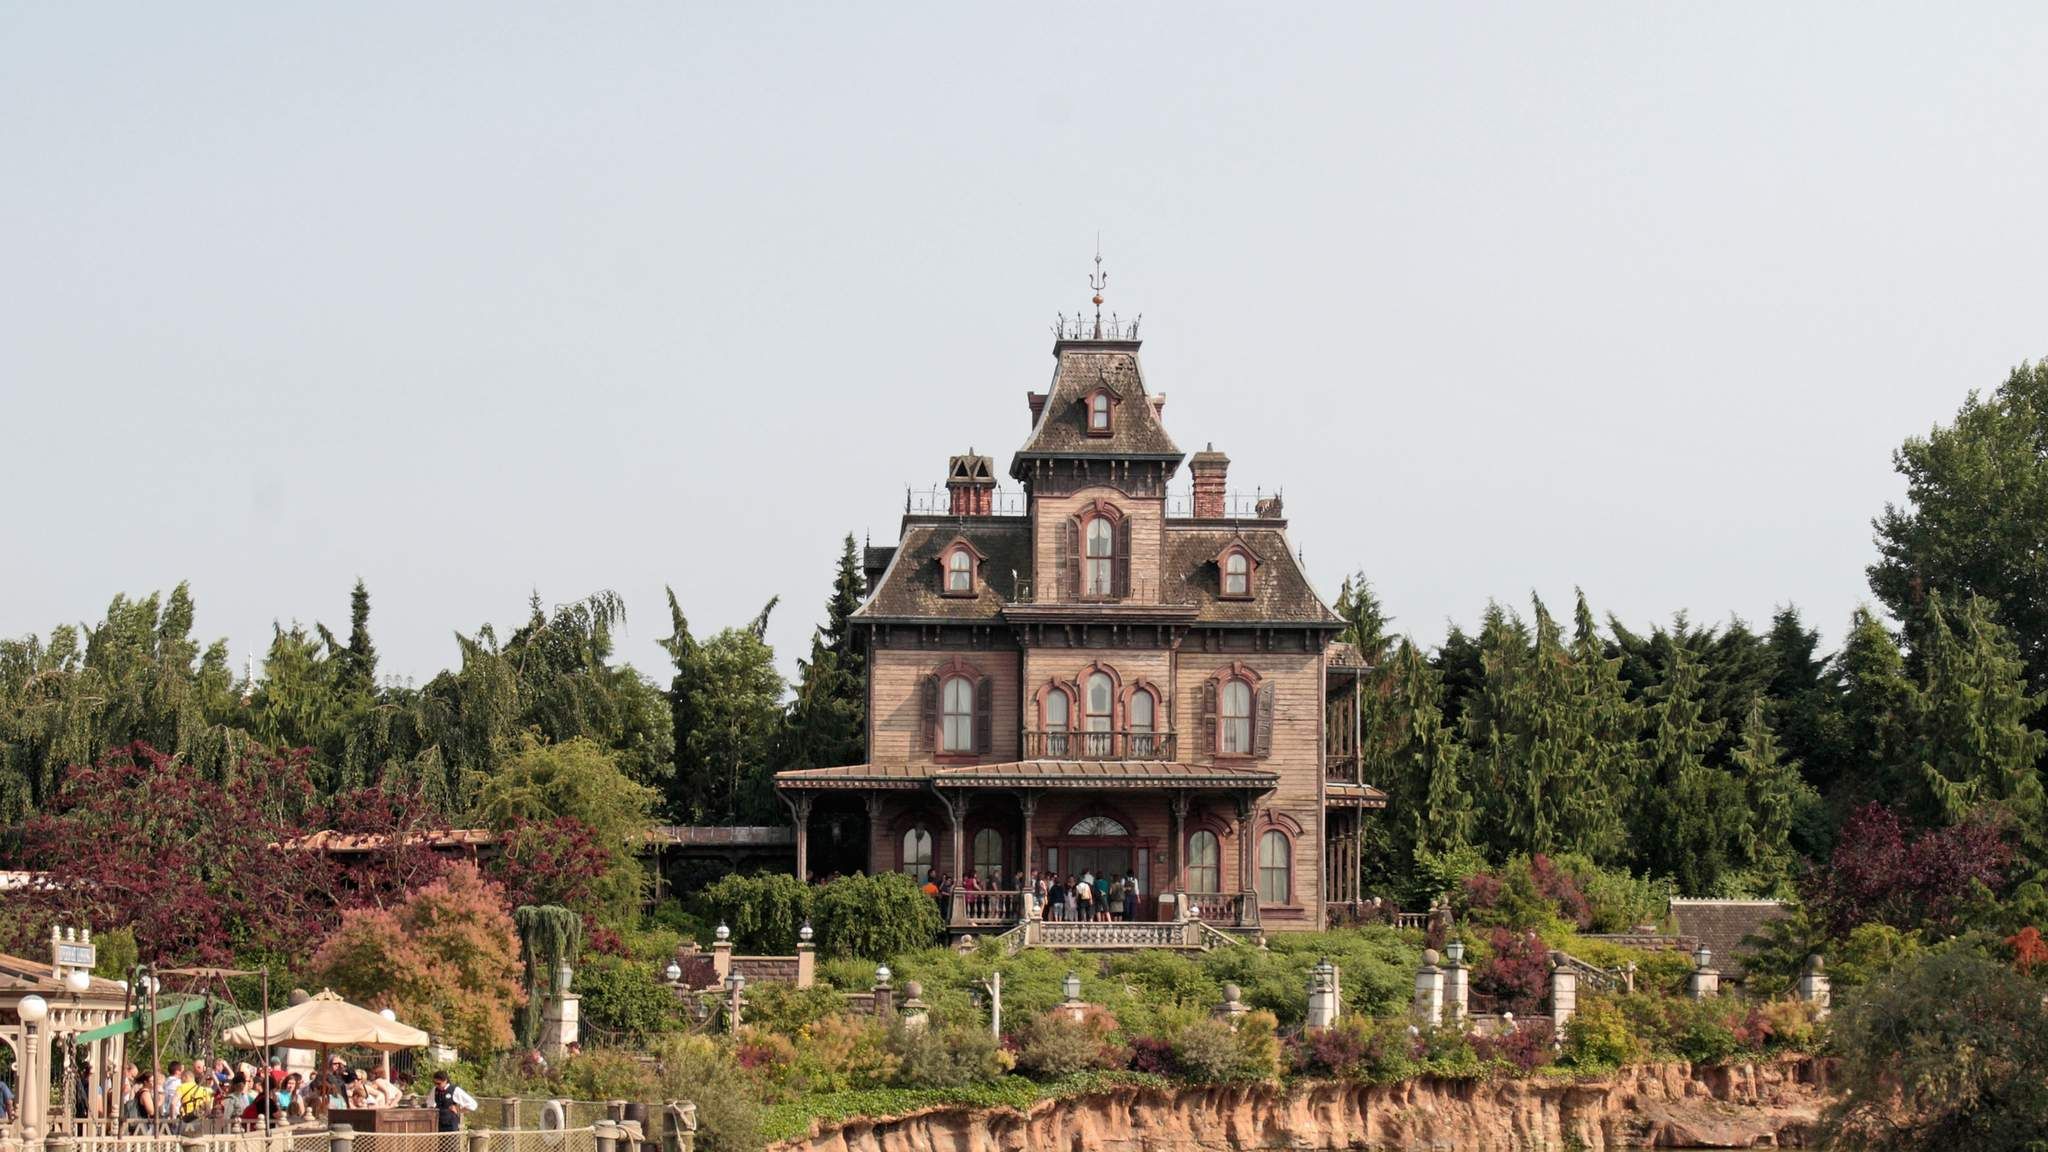 Disneyland Worker Found Dead In Haunted House